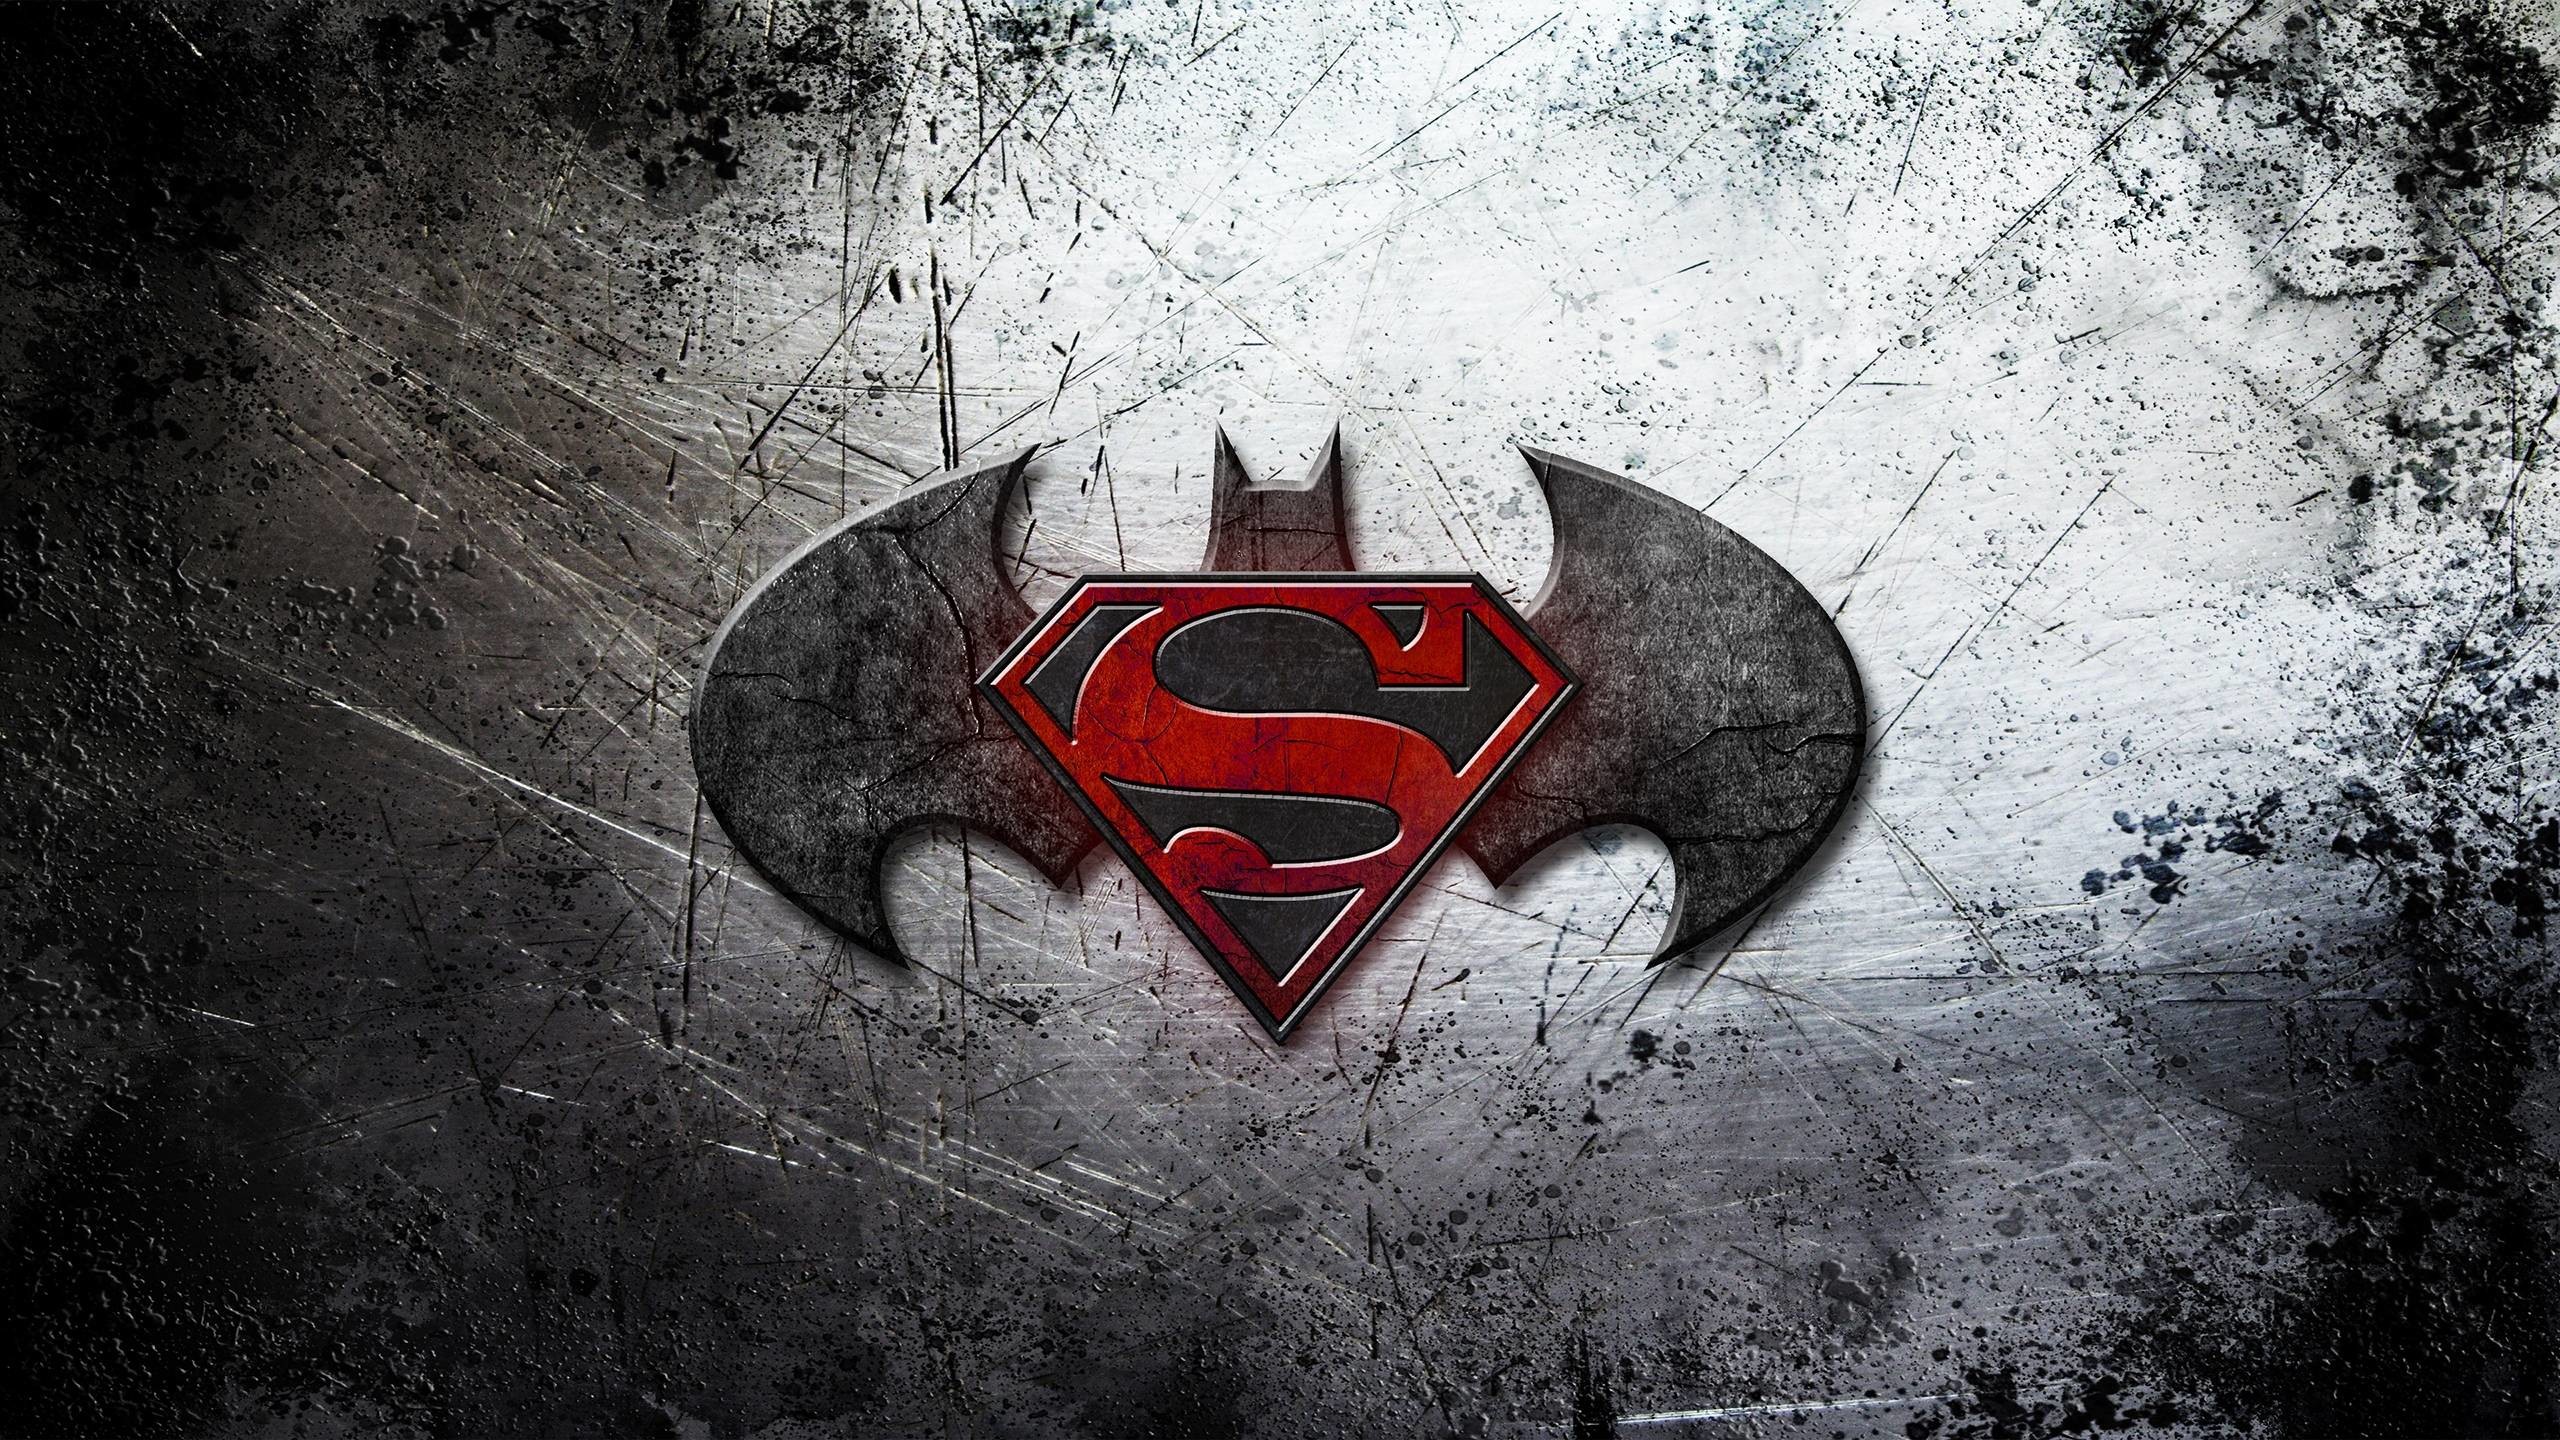 2560x1440 Batman vs Superman Logo Wallpaper Cool Wallpapers HD 1080p .